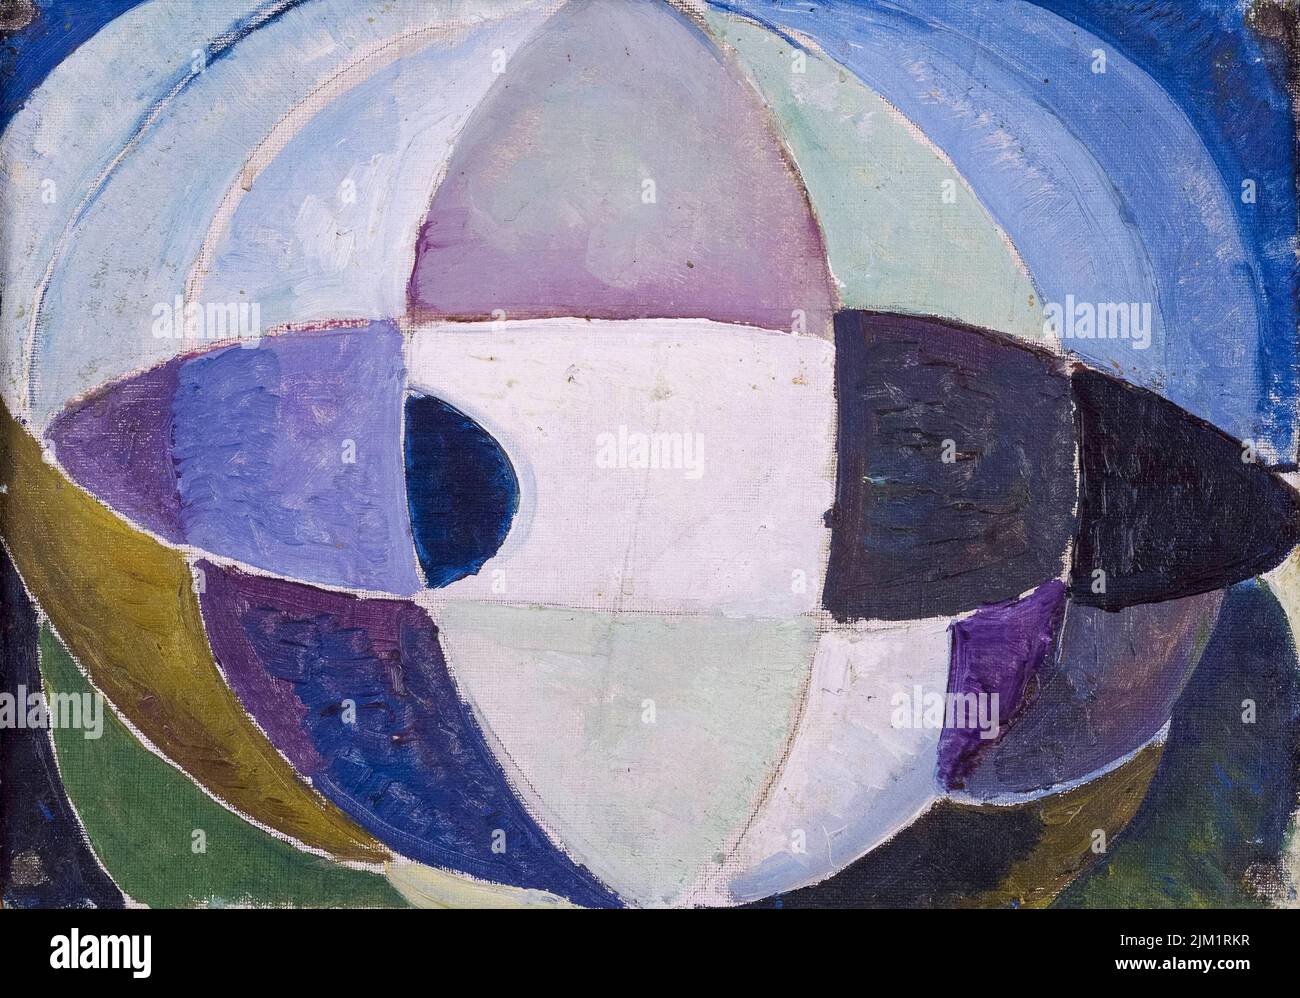 Theo van Doesburg, Sphere, peinture abstraite à l'huile sur toile montée sur contreplaqué, vers 1916 Banque D'Images